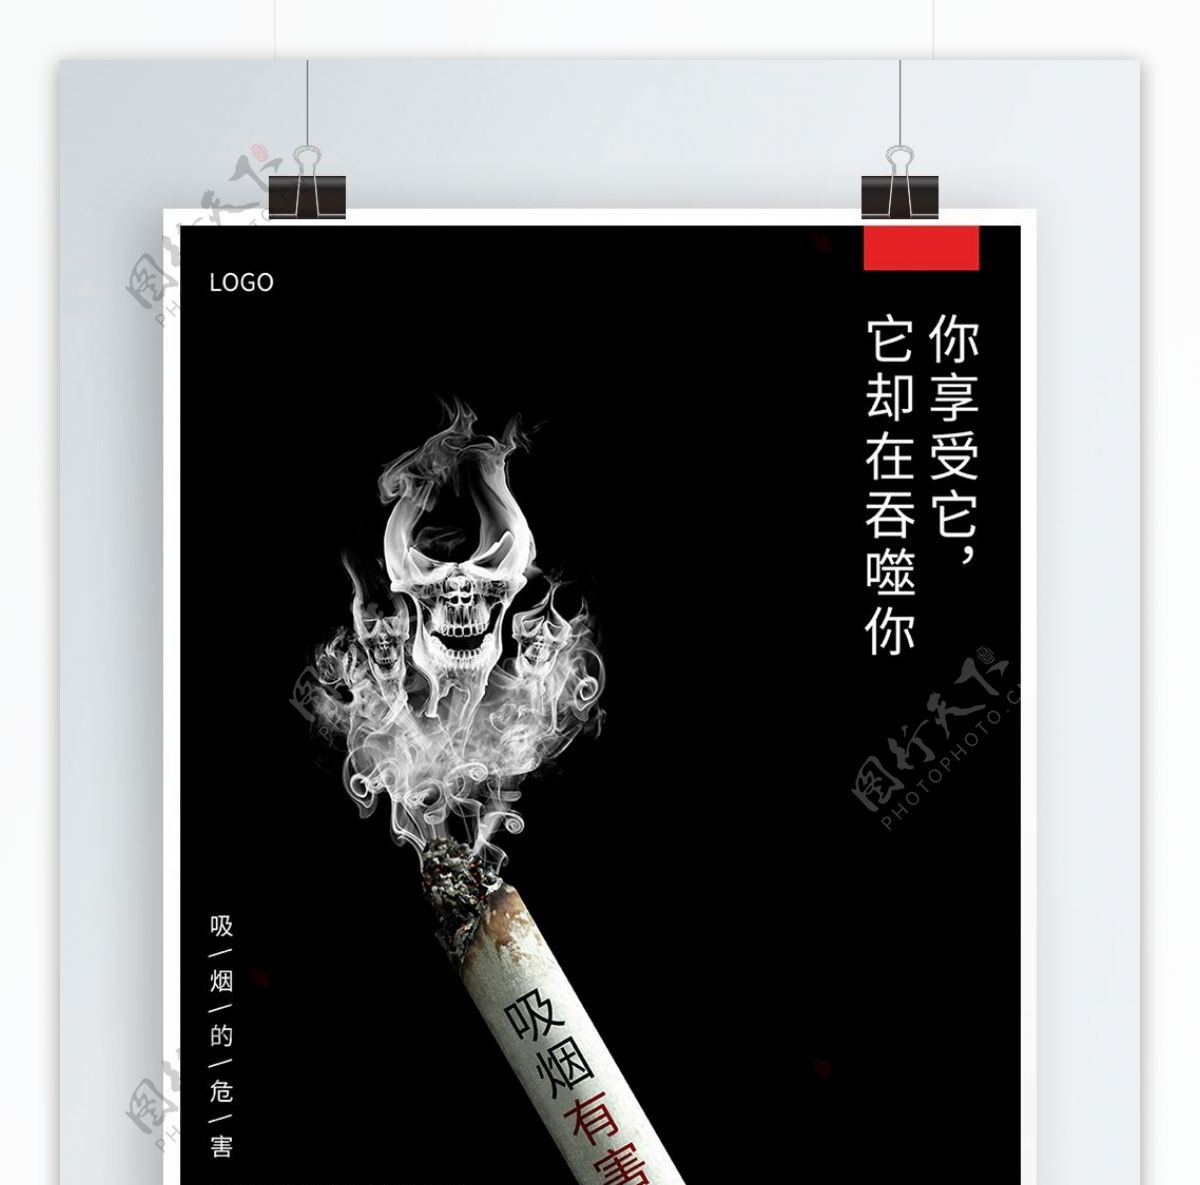 吸烟有害健康魔鬼烟雾黑色创意简洁公益海报